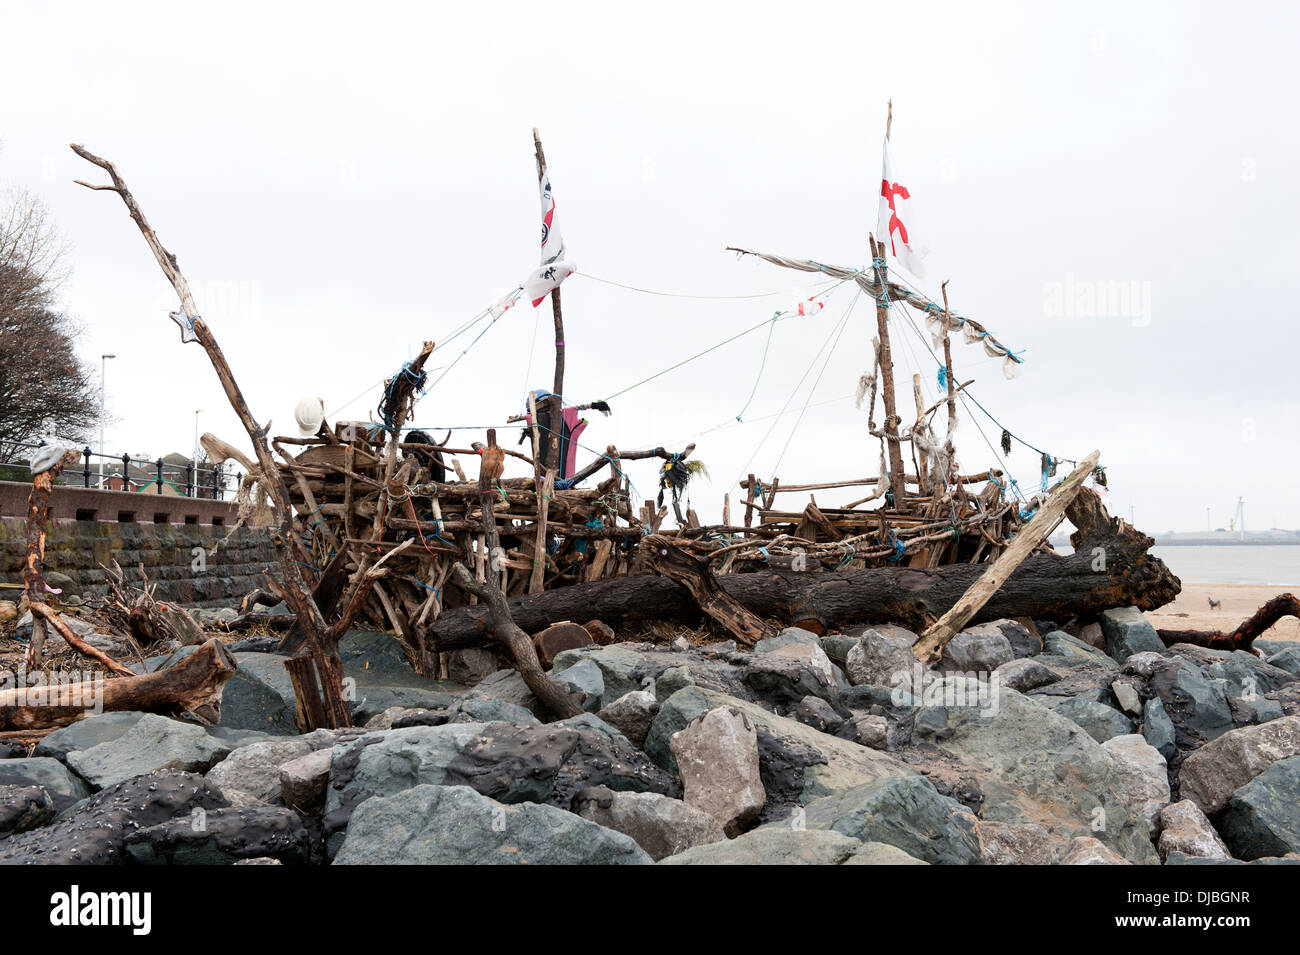 Le bateau pirate construit à partir de bois flotté Bois flotté sur la plage Banque D'Images